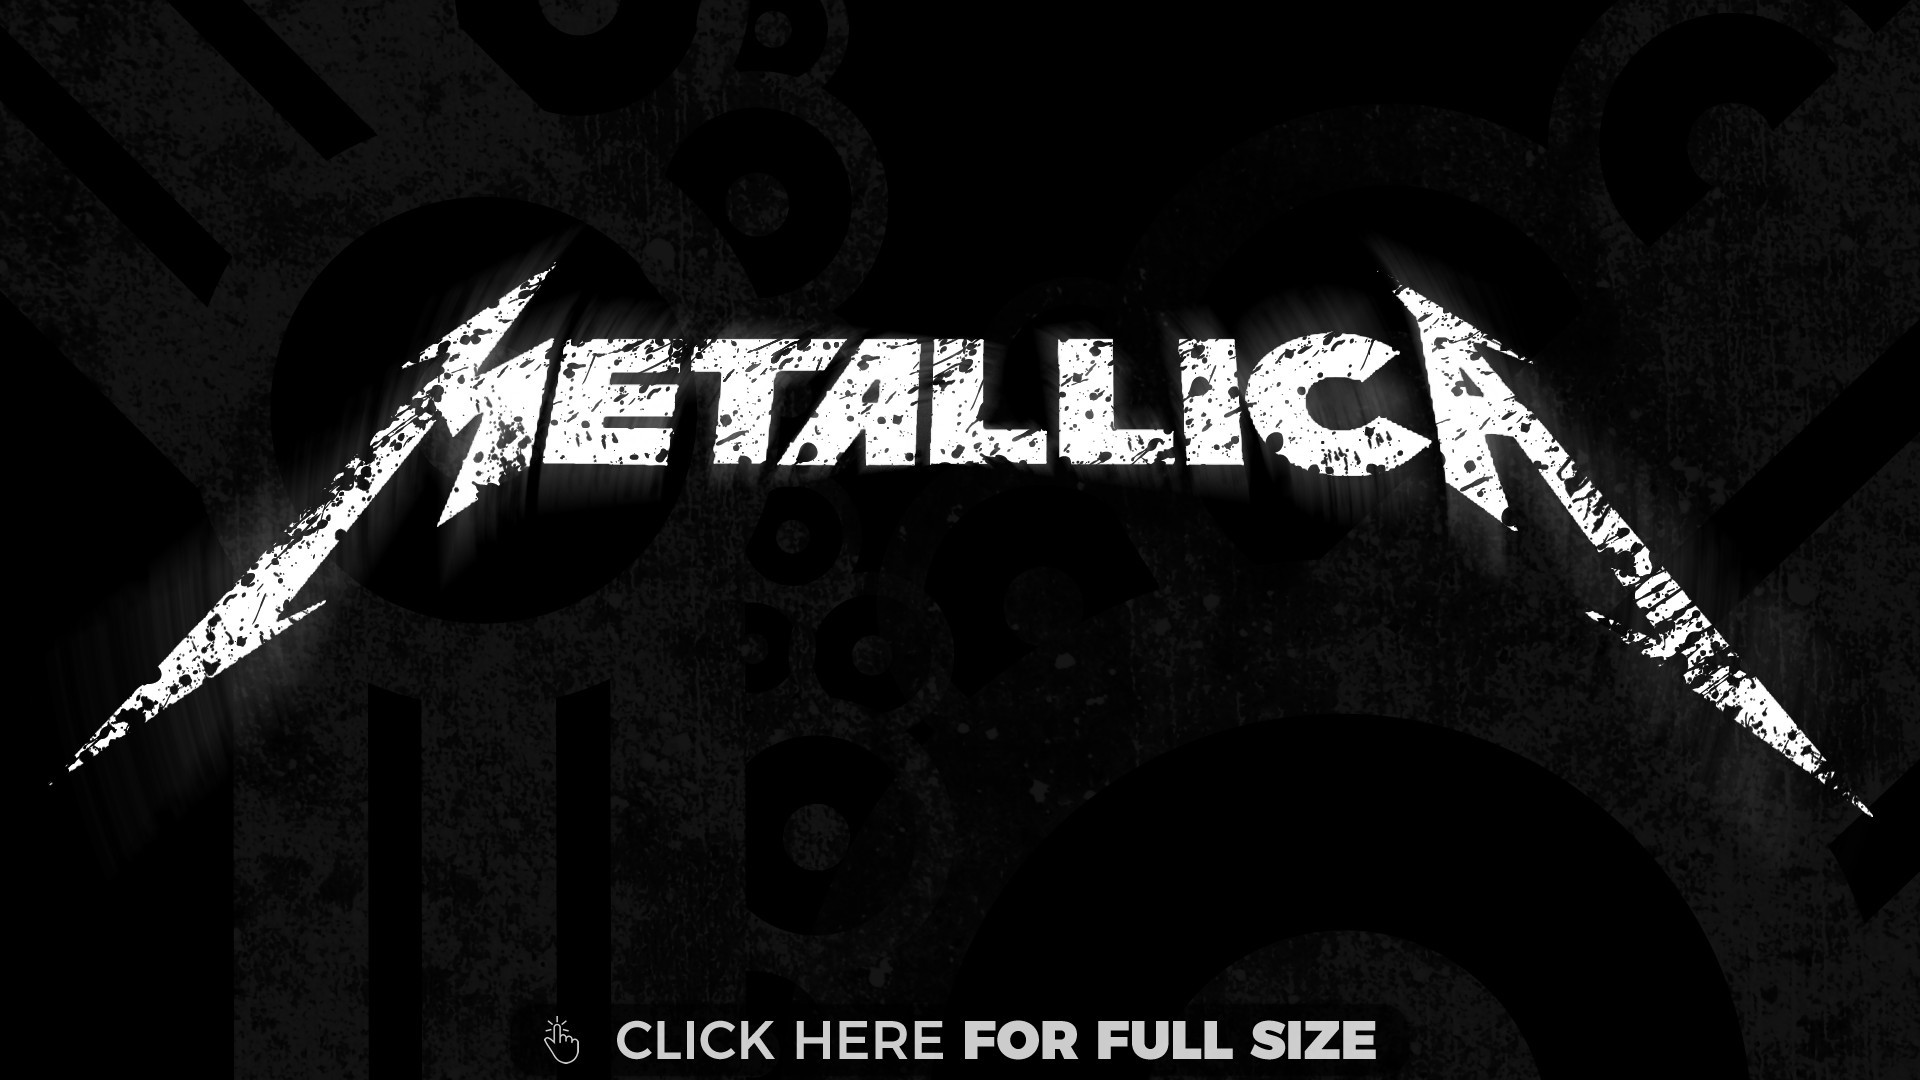 1920x1080 Metallica Wallpapers Hd Resolution Unique Metallica Hd 7659 Desktop  Wallpapers Pinterest Of Metallica Wallpapers Hd Resolution